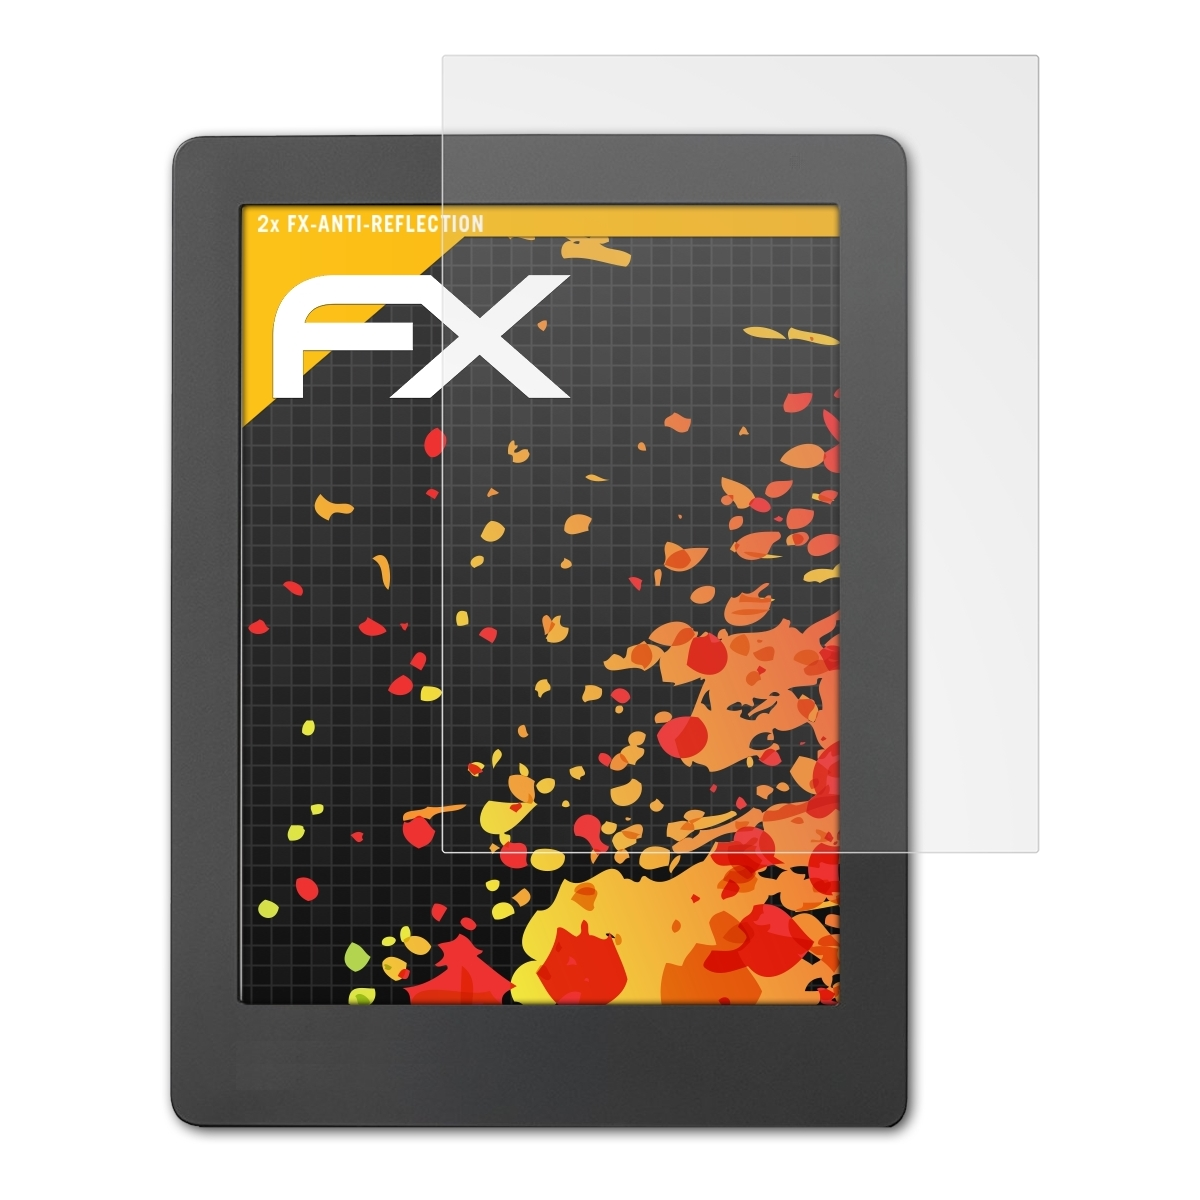 2x Kobo H2O FX-Antireflex ATFOLIX Edition Aura Displayschutz(für 2)